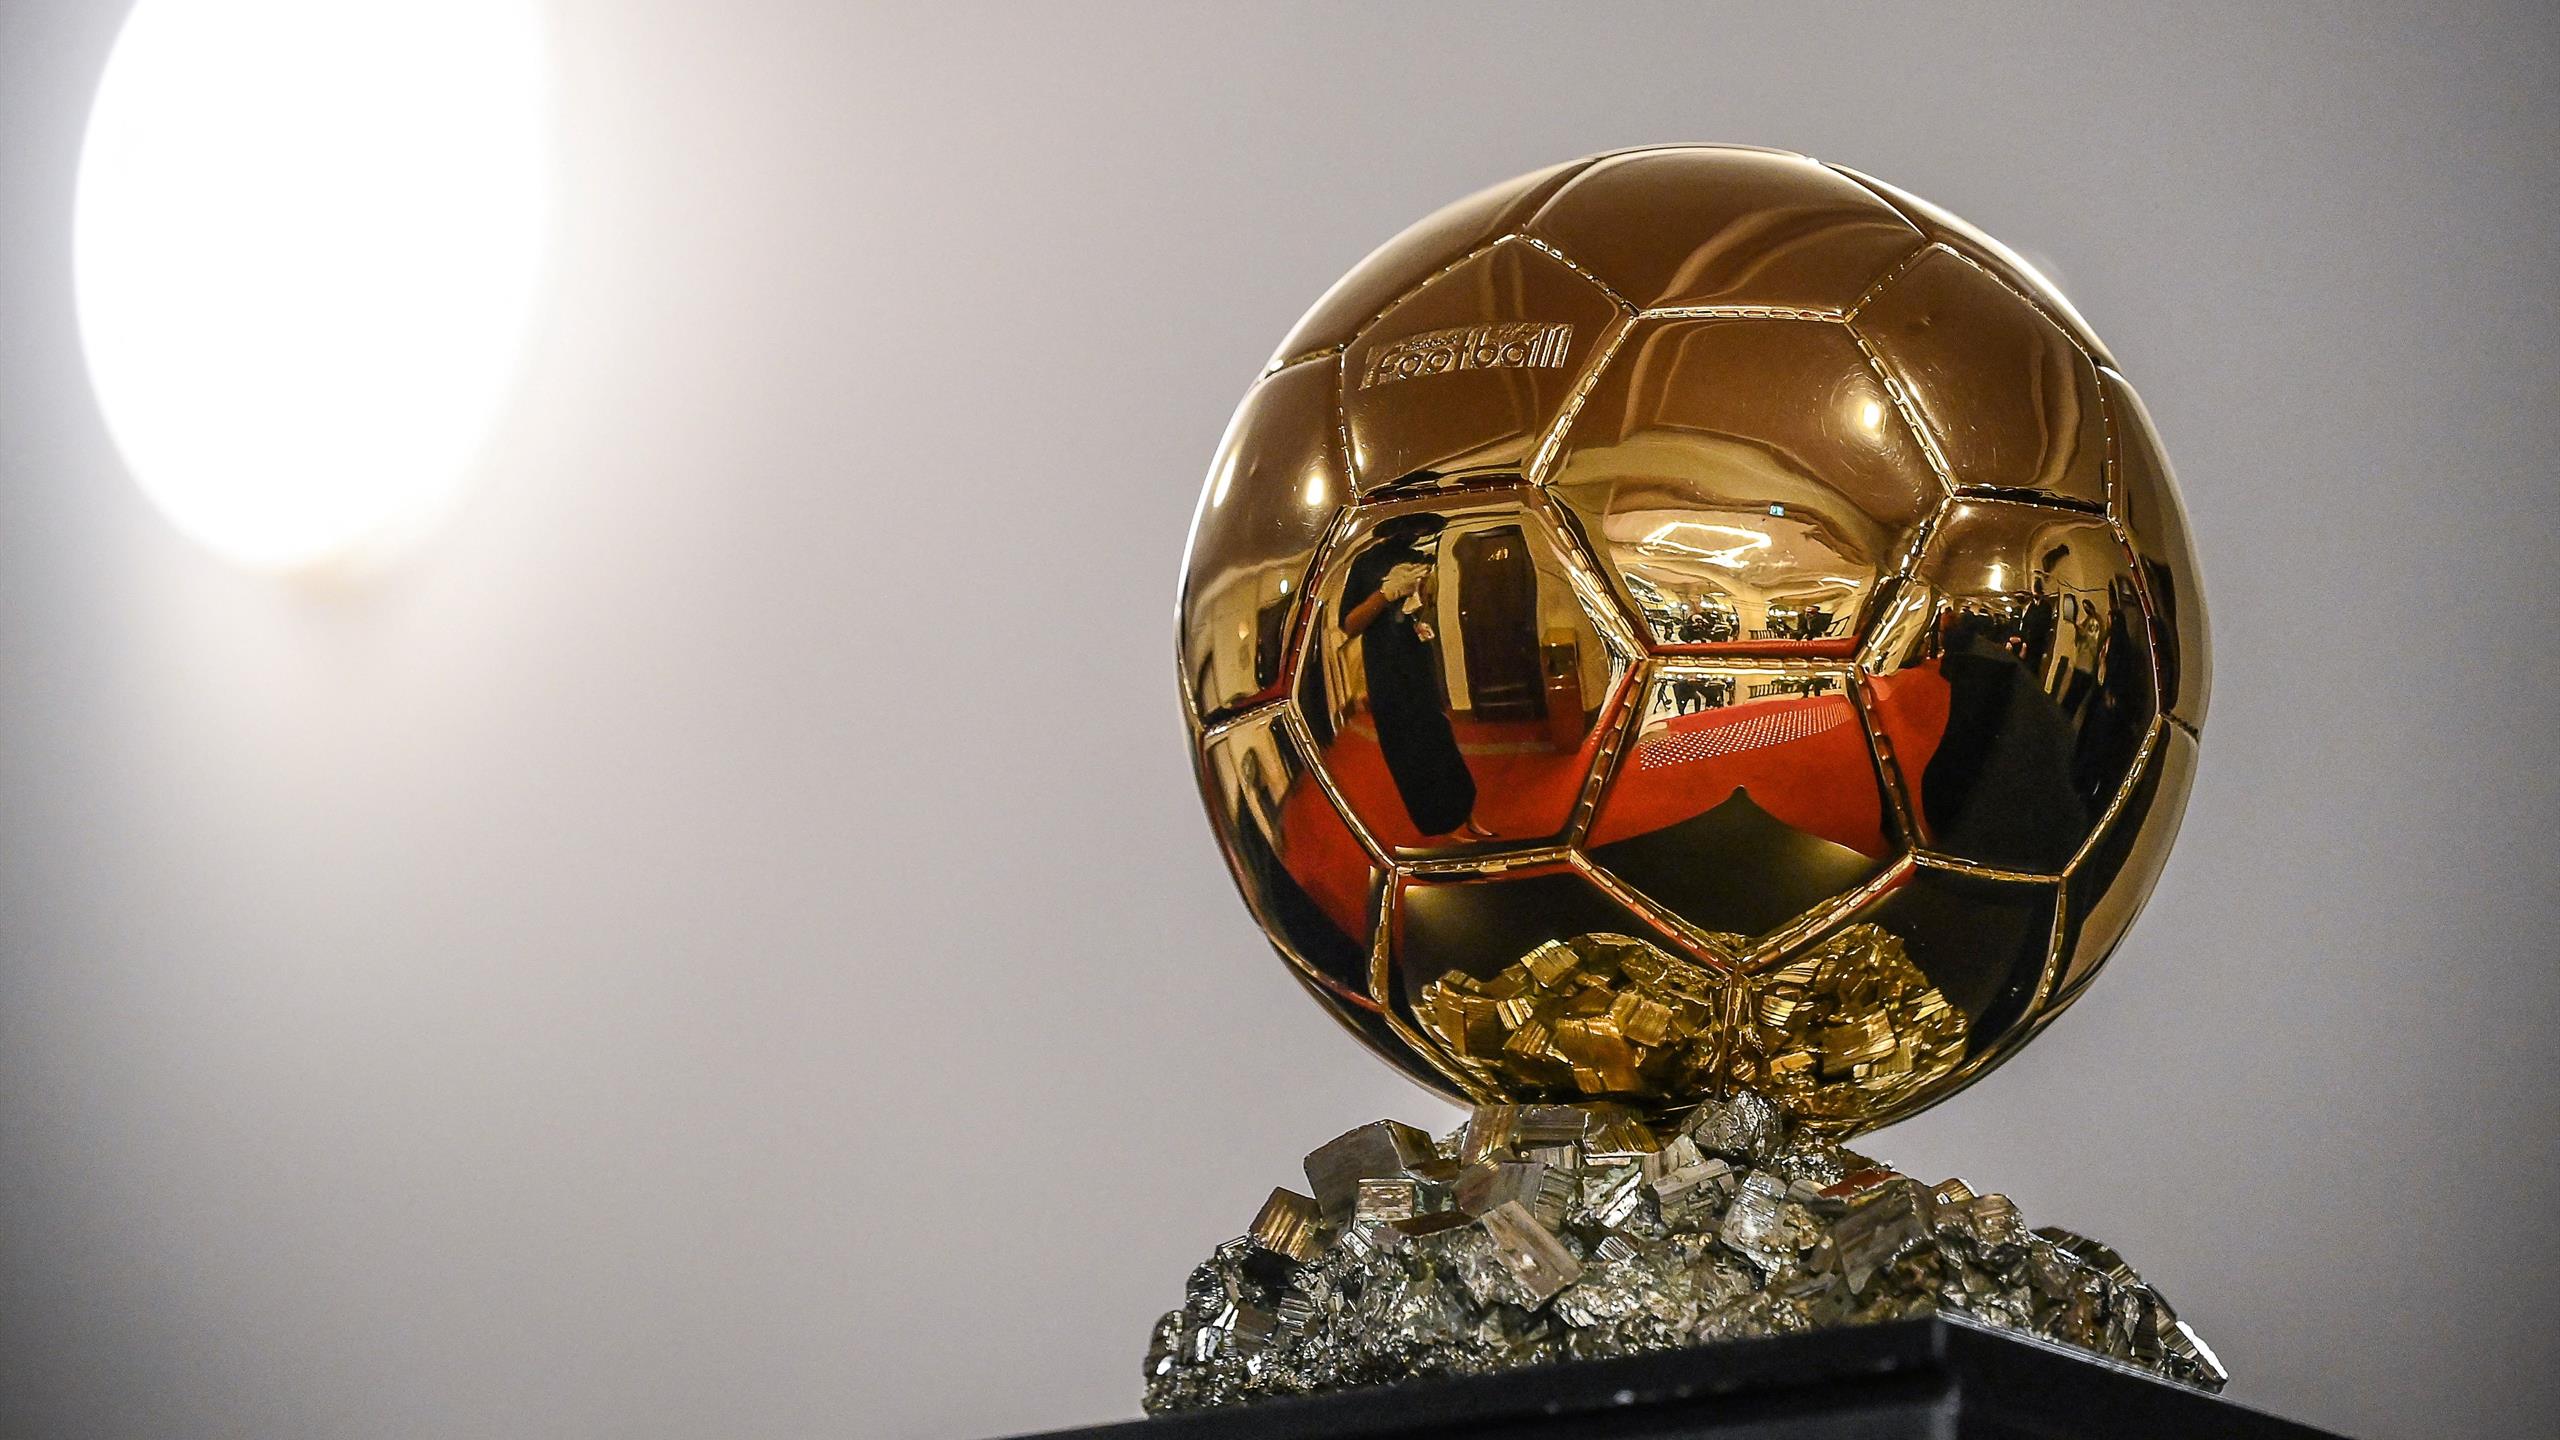 The prestigious Ballon d'Or